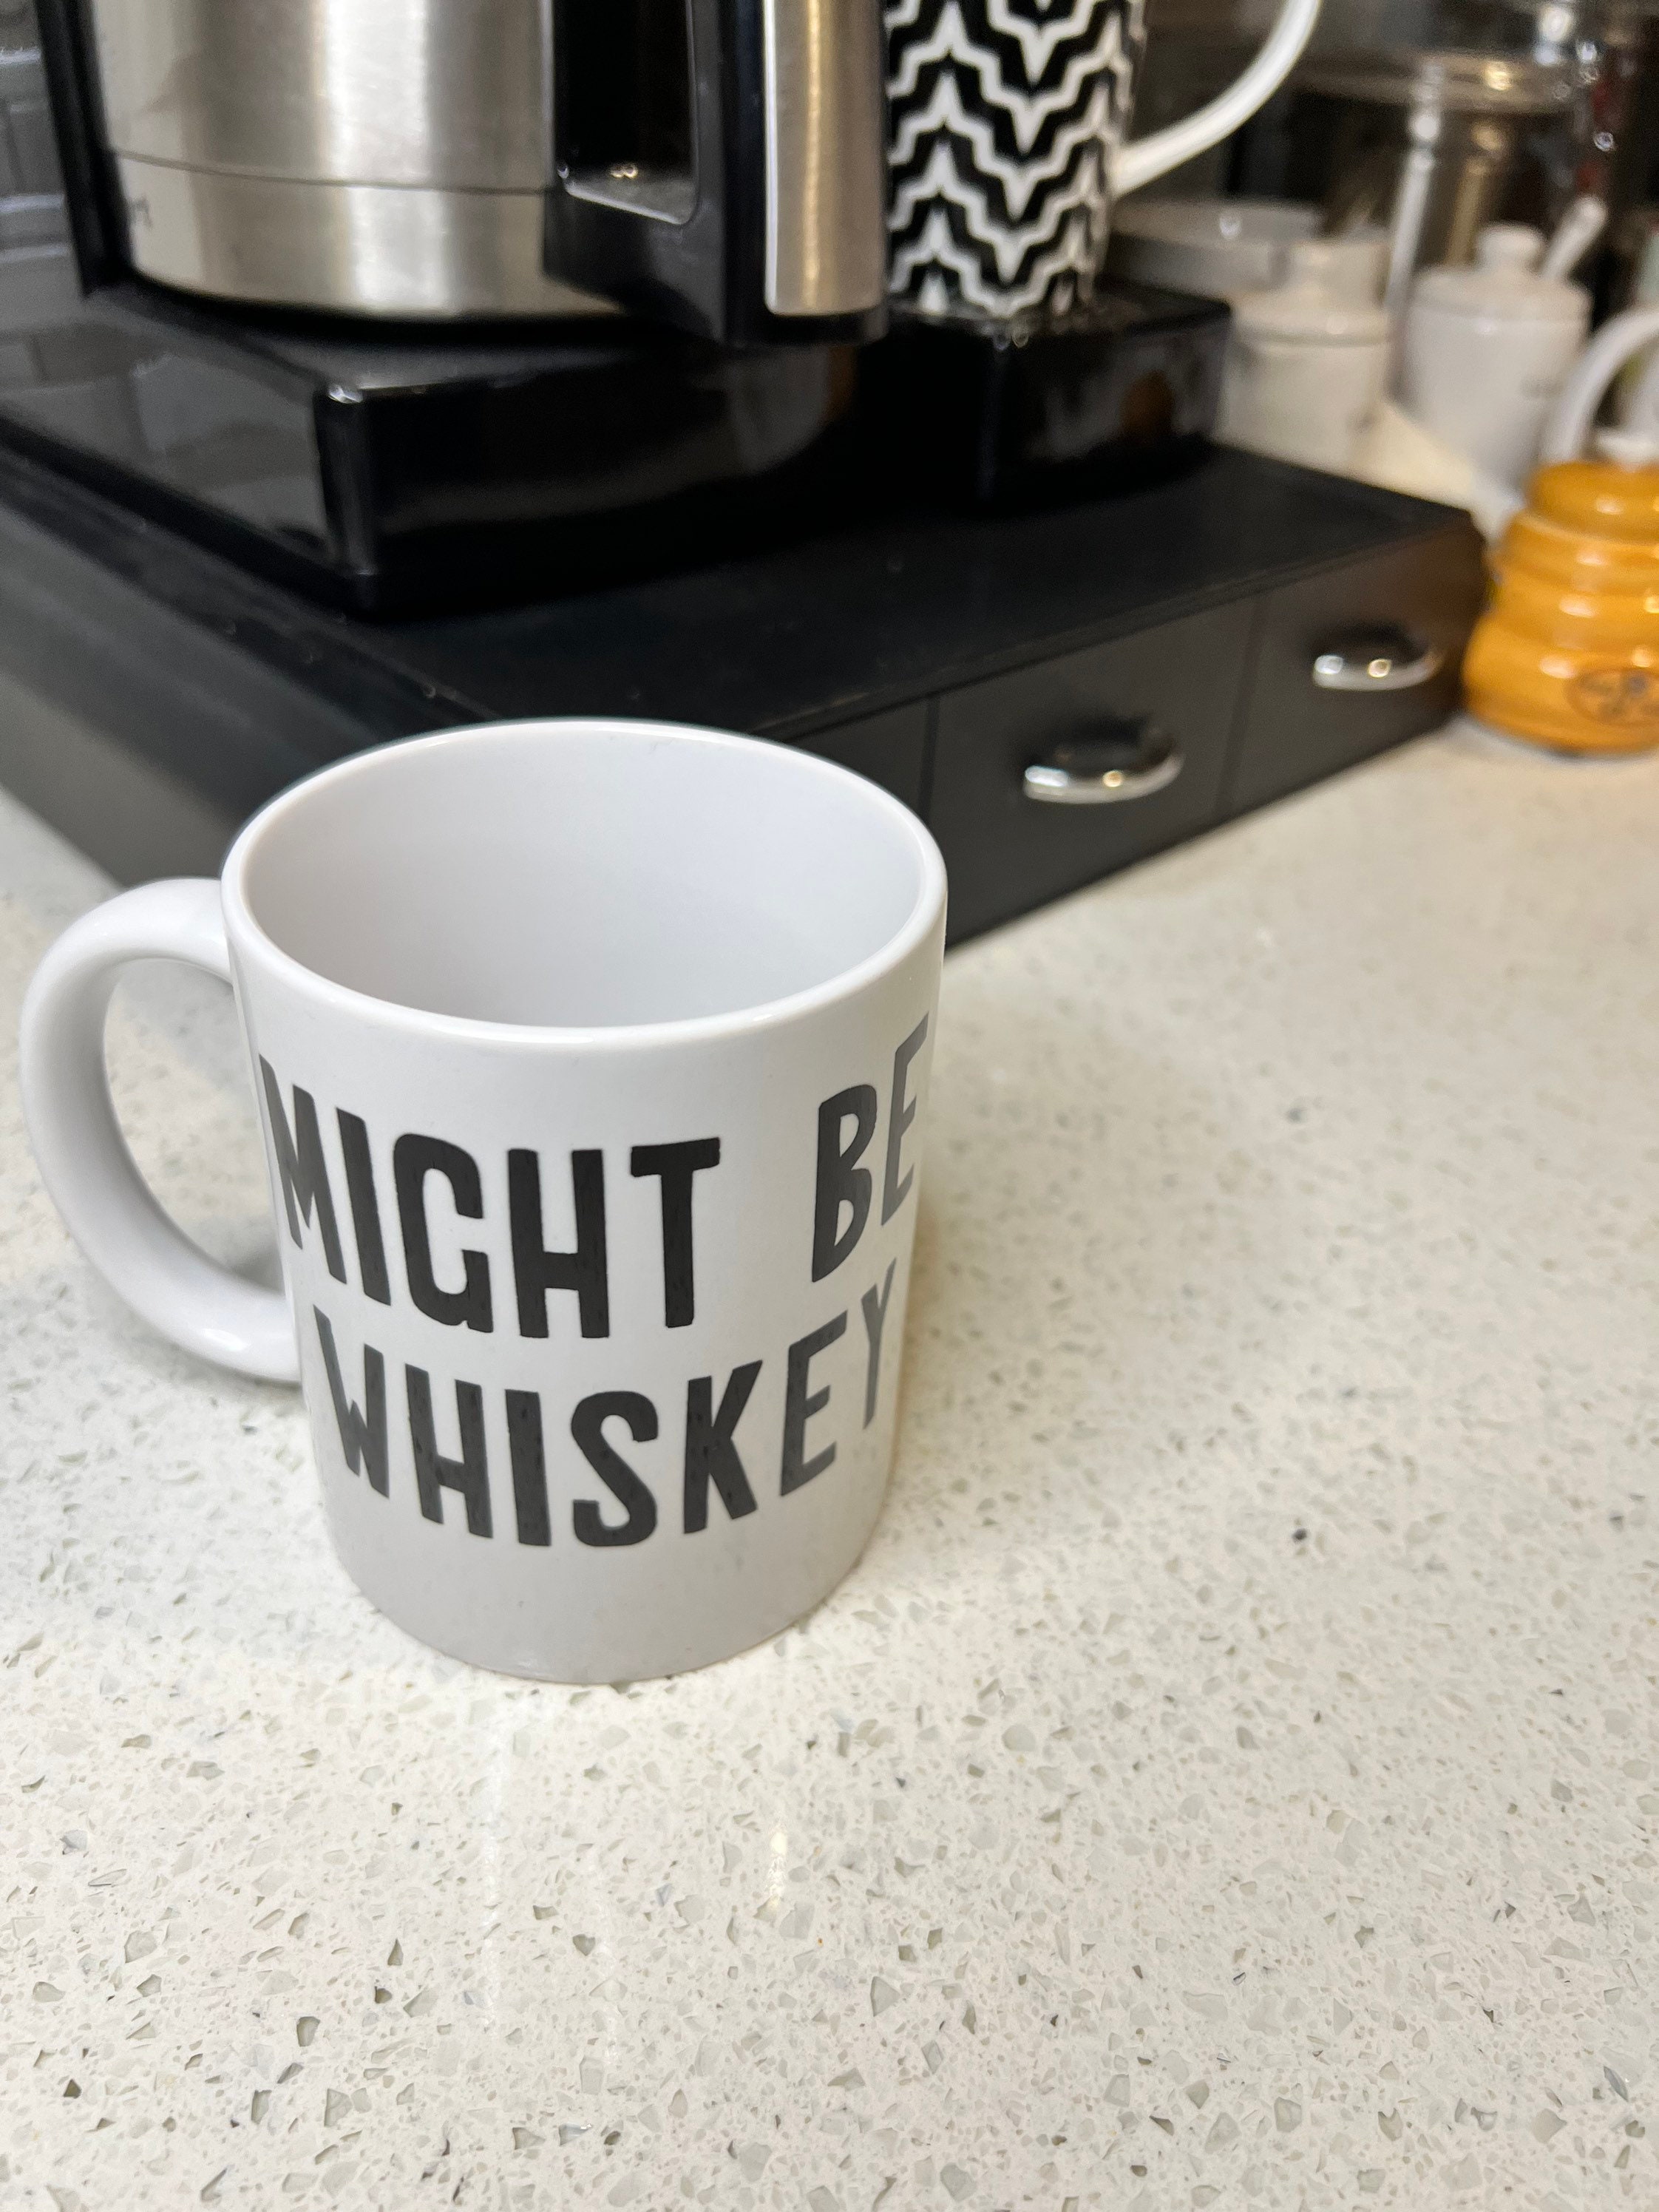 15 oz Extra Large Coffee Mug - This Might be Whiskey – Candlelit